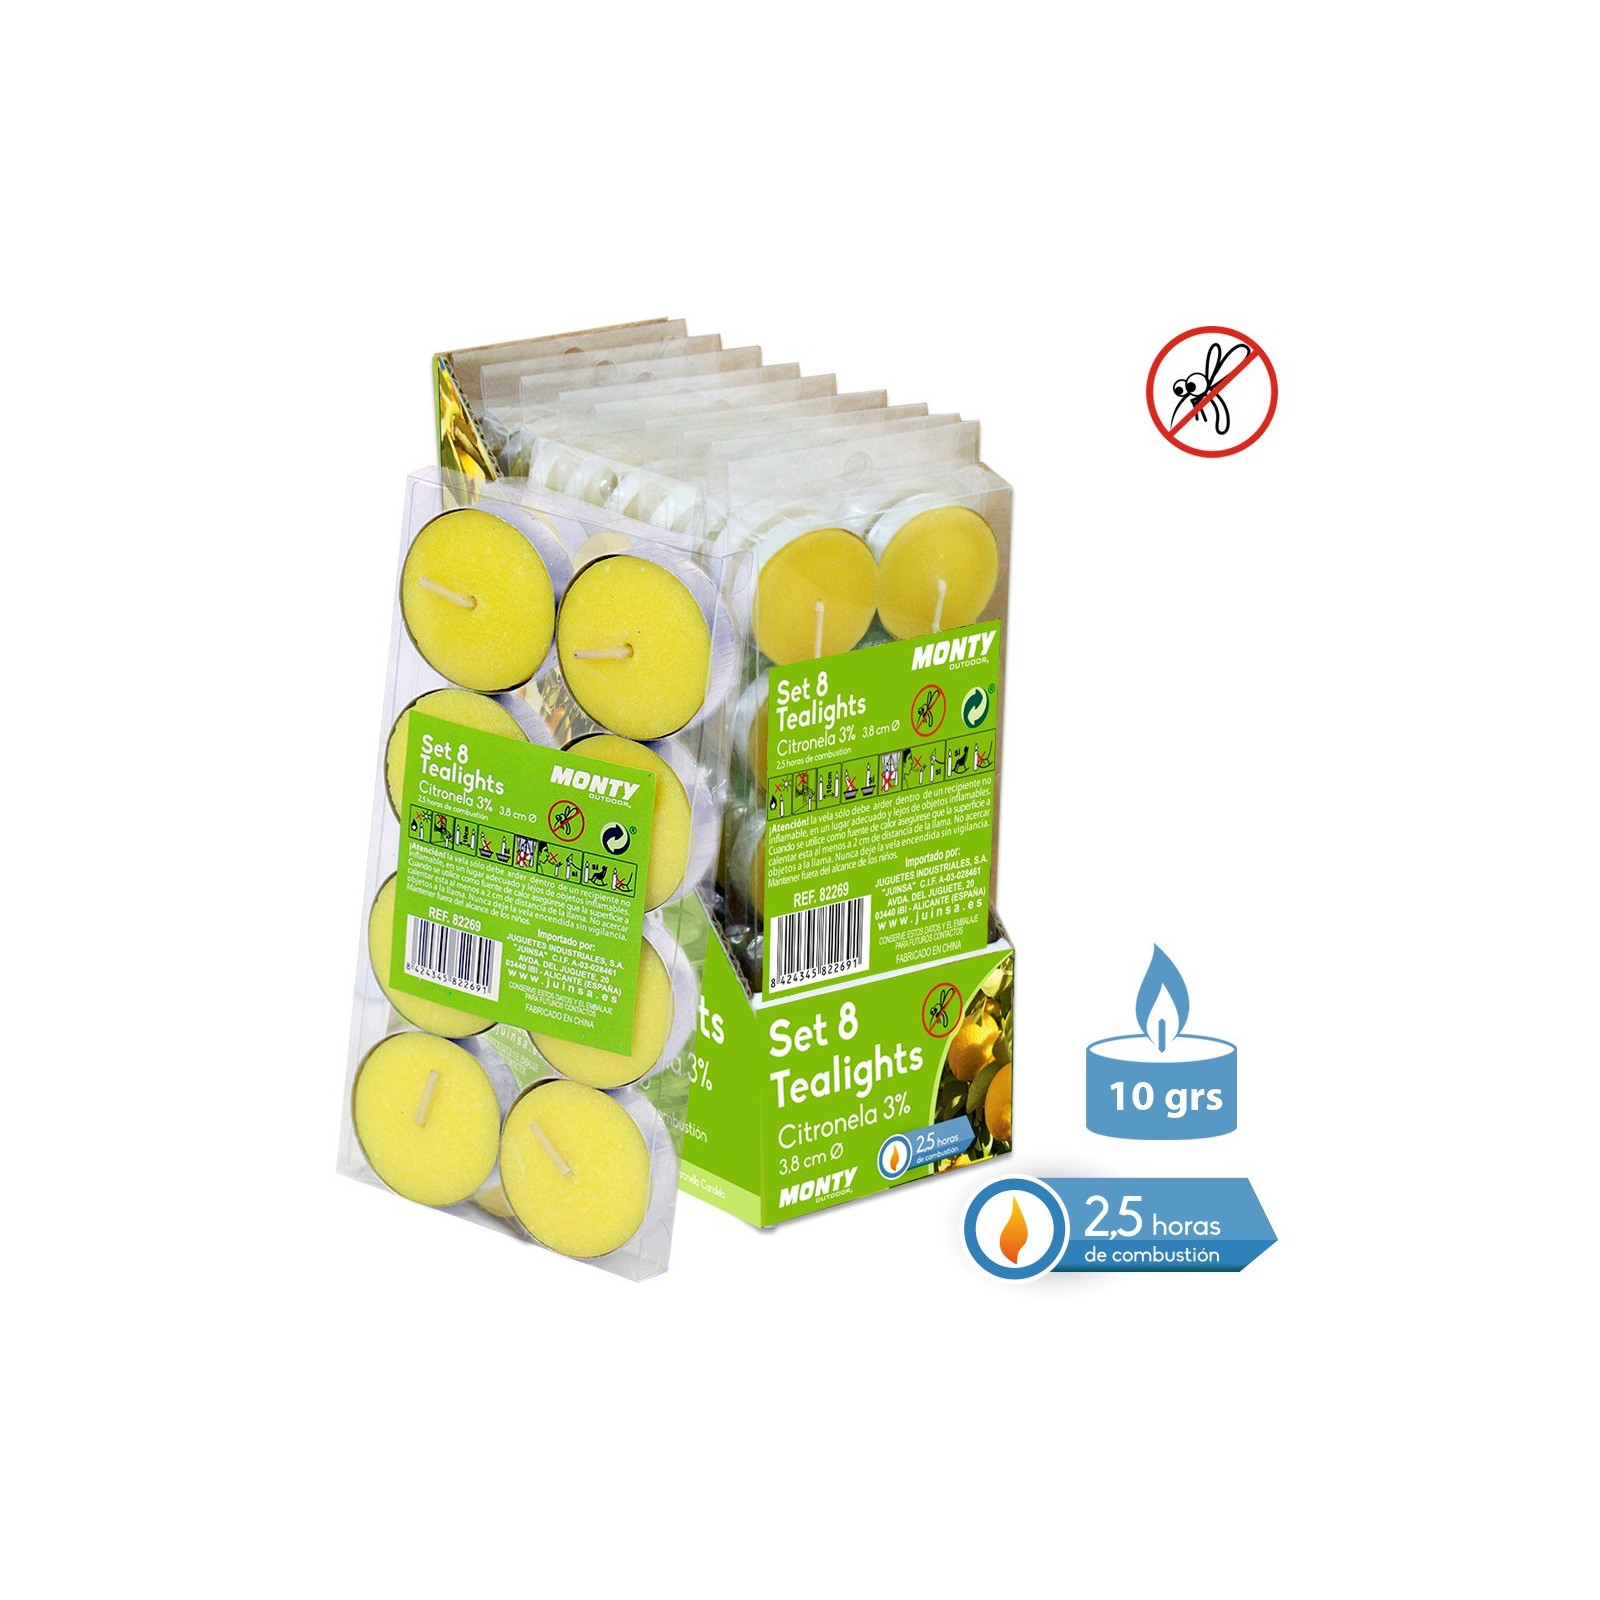 S 8 vela 3% citronela tealight 3 80 x 1 10 cm